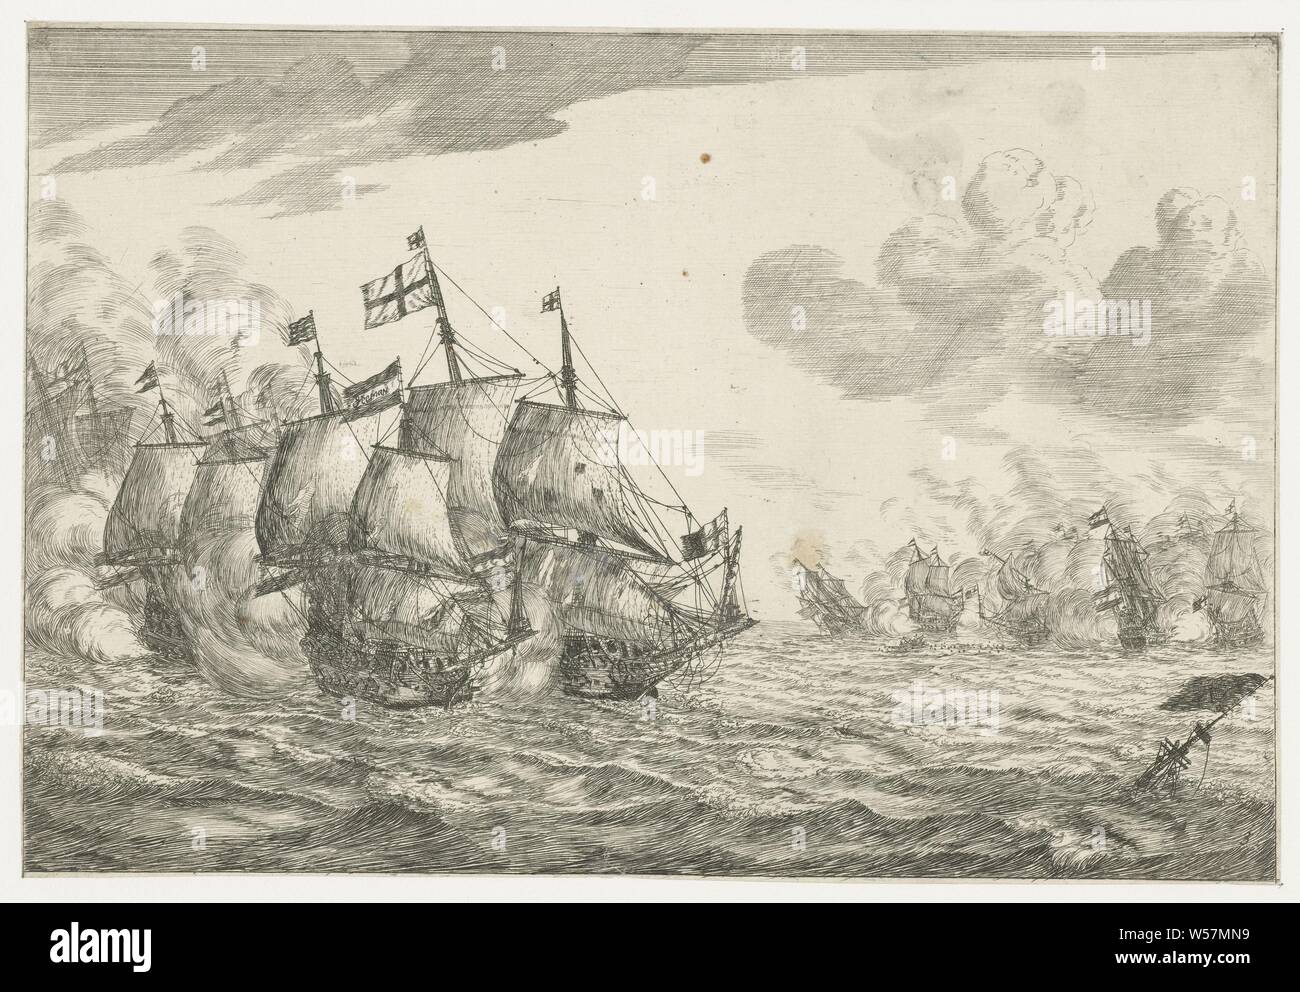 Seeschlacht neues Schiff Bataillon (Titel der Serie), zwei schwere Kämpfe zwischen niederländischen und englischen Schiffe., Reinier Nooms (auf Objekt erwähnt), Niederlande, 1652 - 1670, Papier, drypoint, H 176 mm x B 259 mm Stockfoto